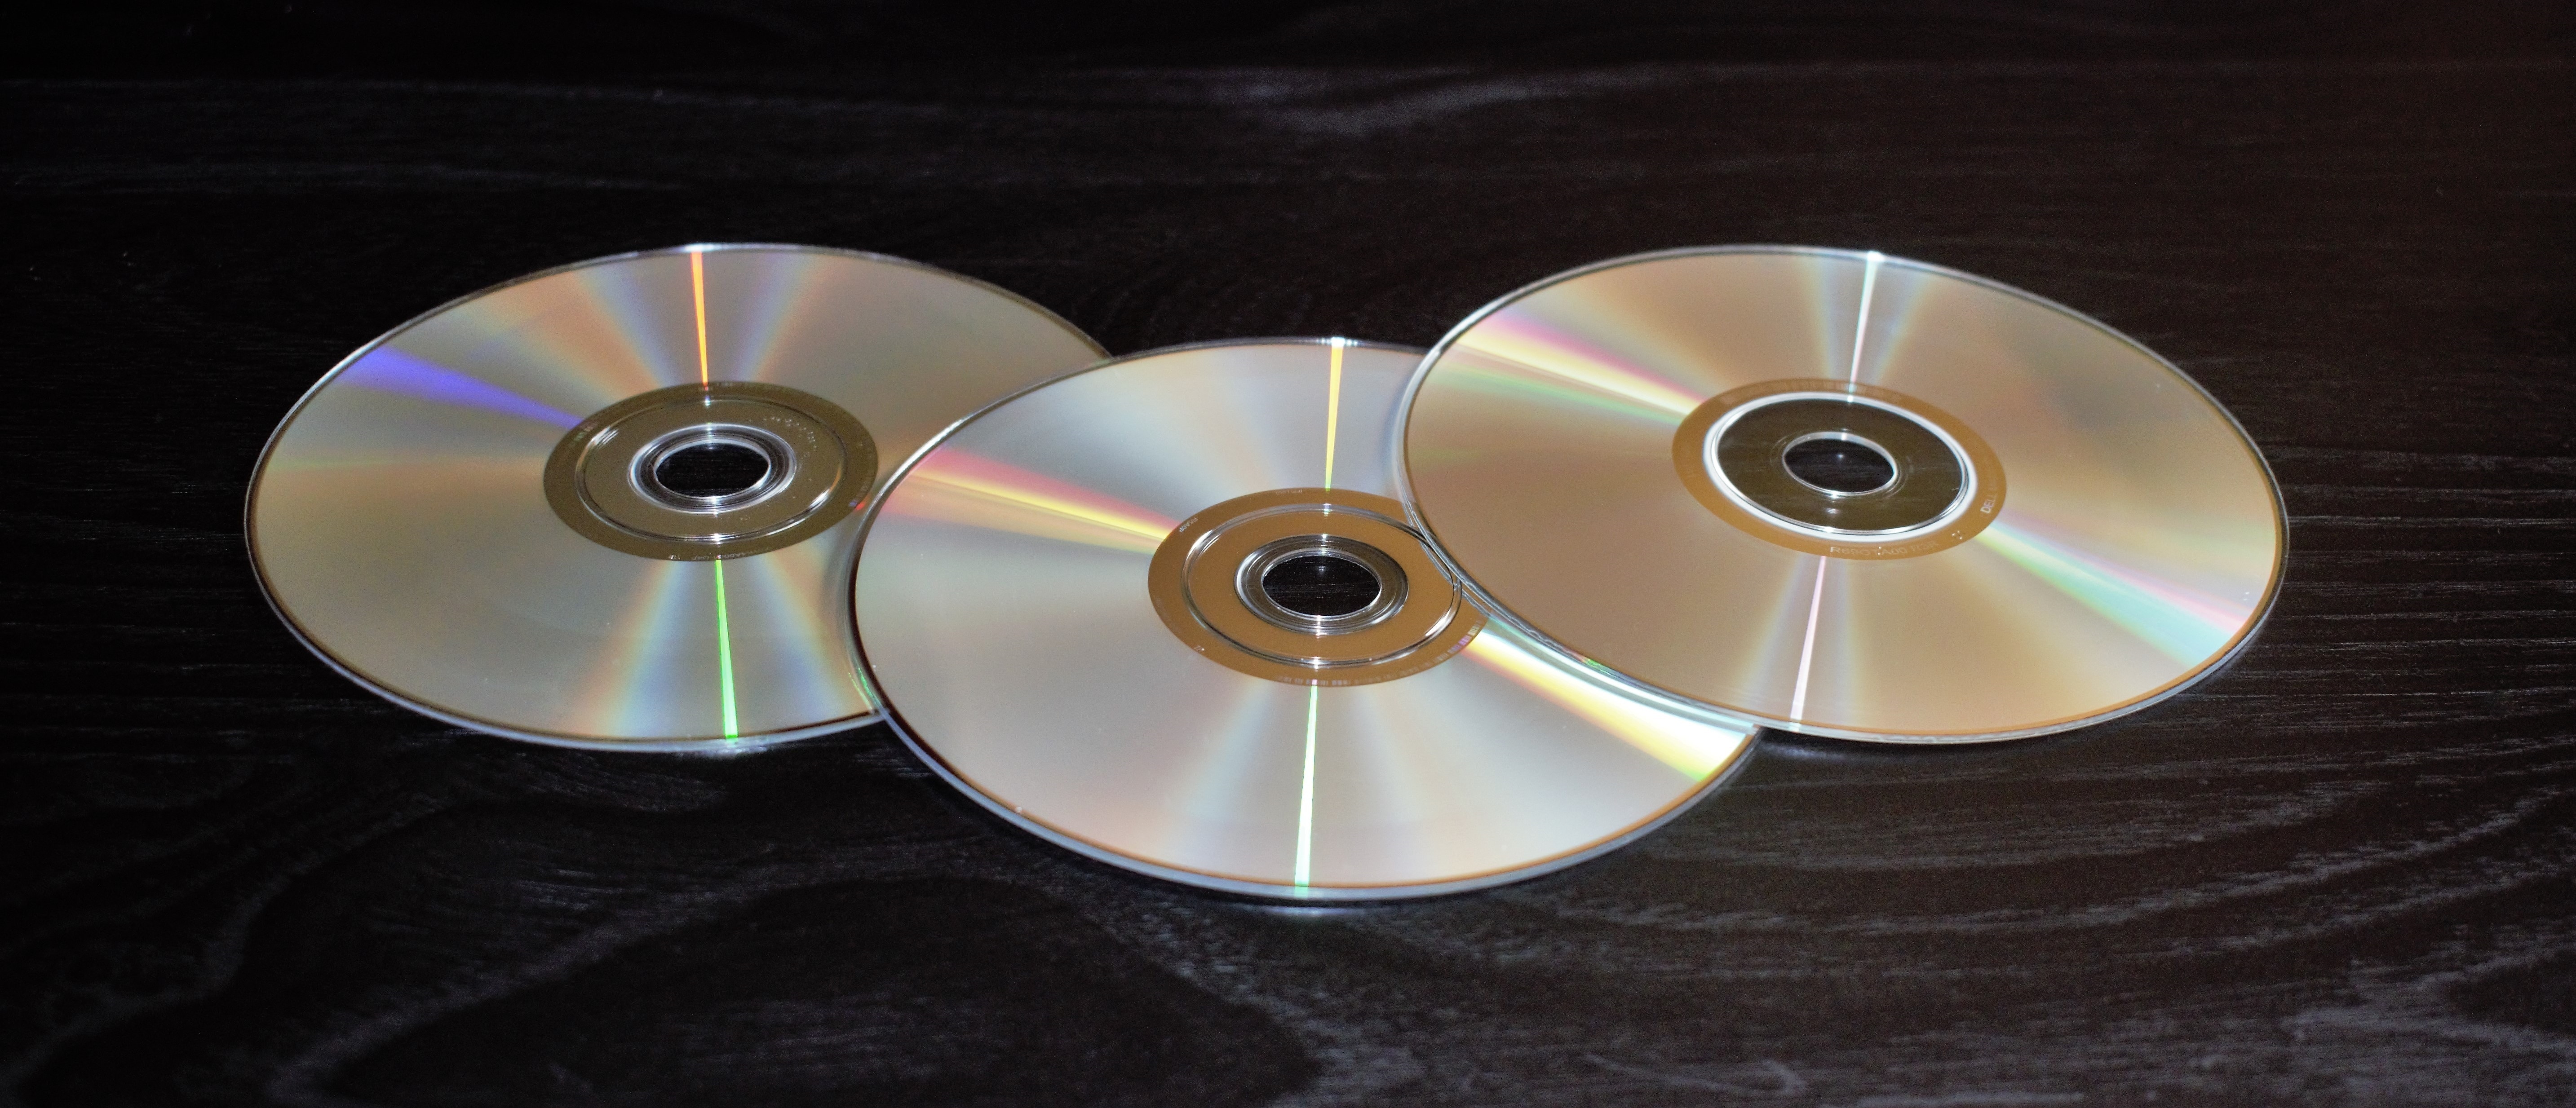 three compact discs